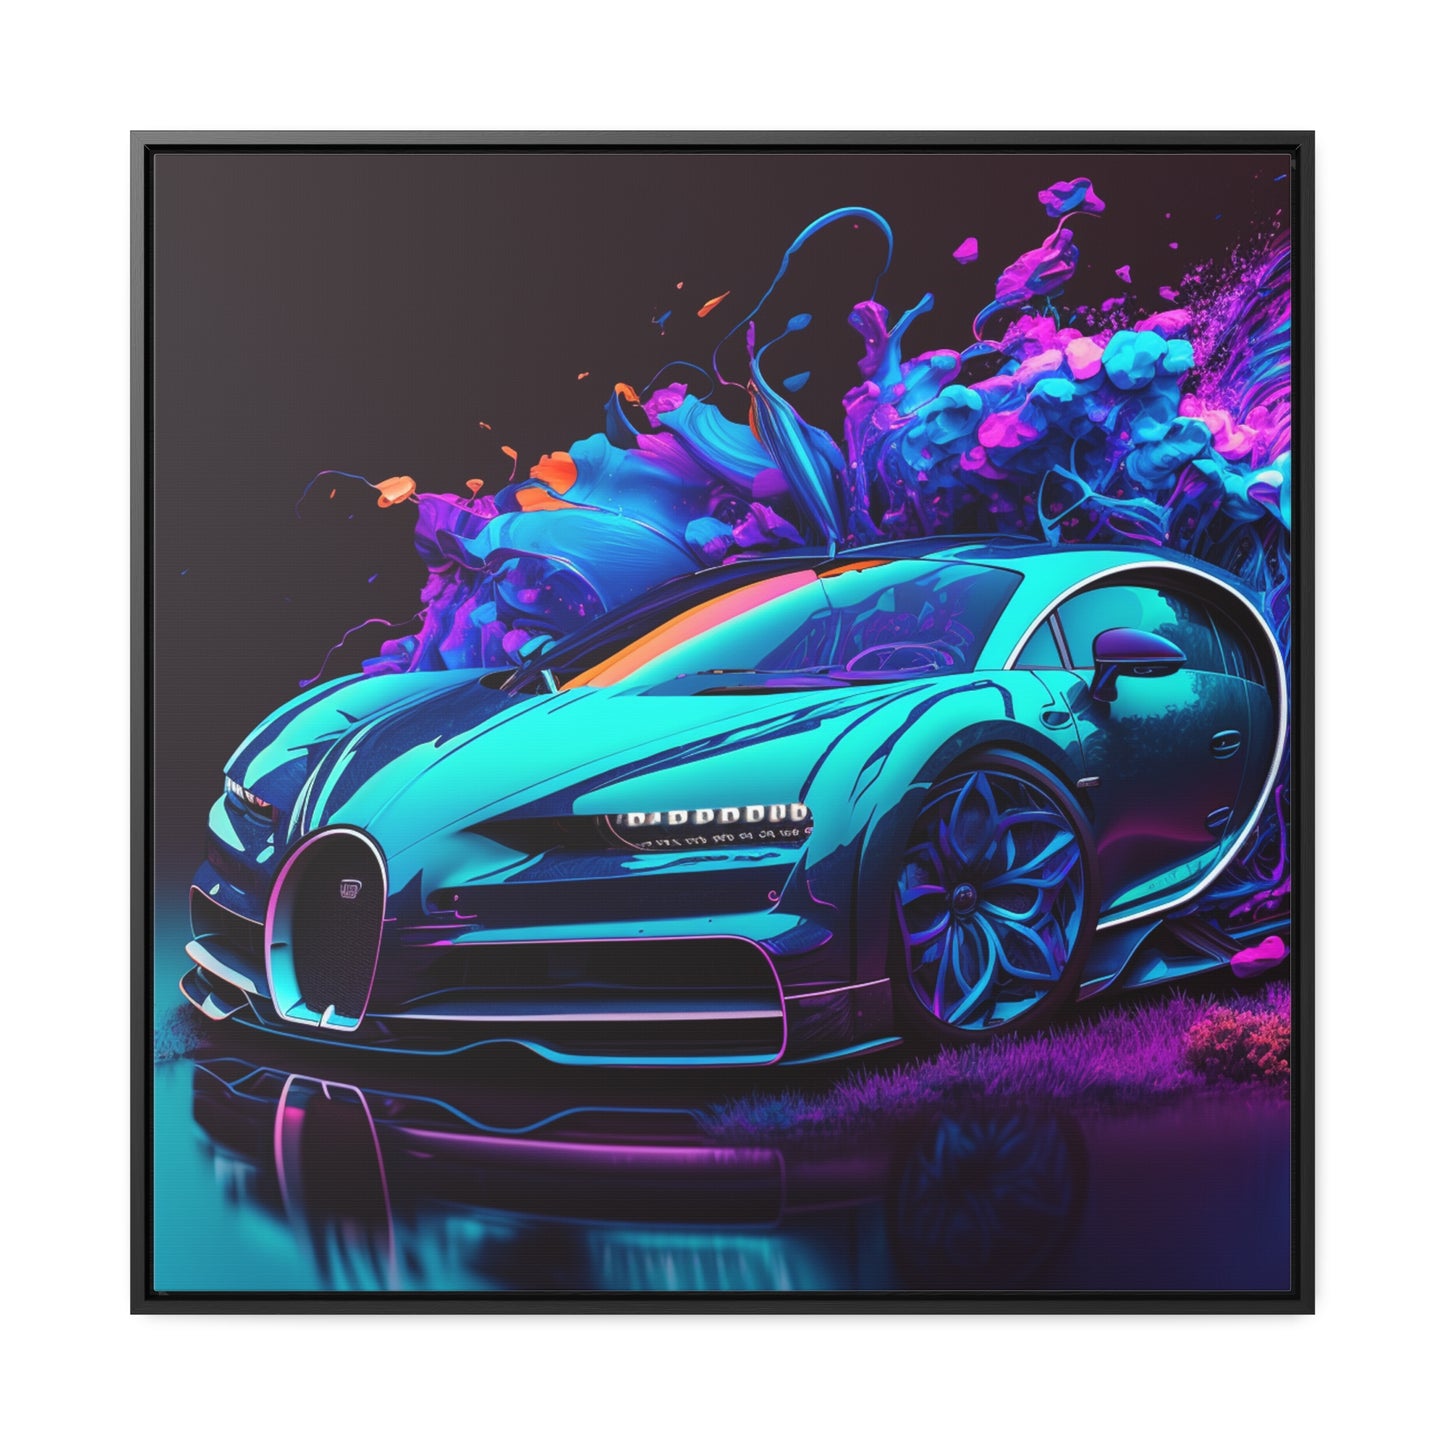 Gallery Canvas Wraps, Square Frame Bugatti Neon Chiron 3